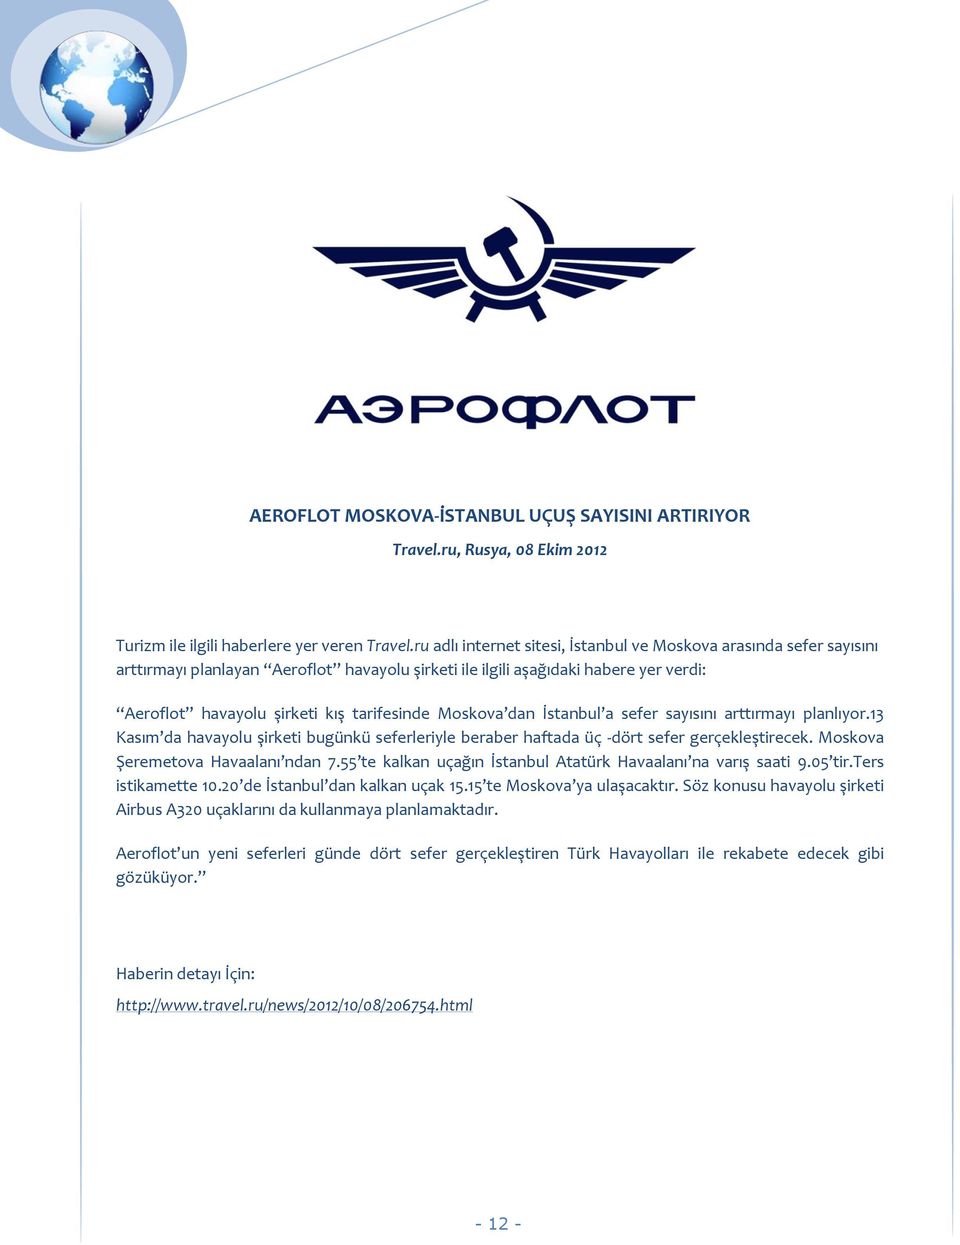 Moskova dan İstanbul a sefer sayısını arttırmayı planlıyor.13 Kasım da havayolu şirketi bugünkü seferleriyle beraber haftada üç -dört sefer gerçekleştirecek. Moskova Şeremetova Havaalanı ndan 7.